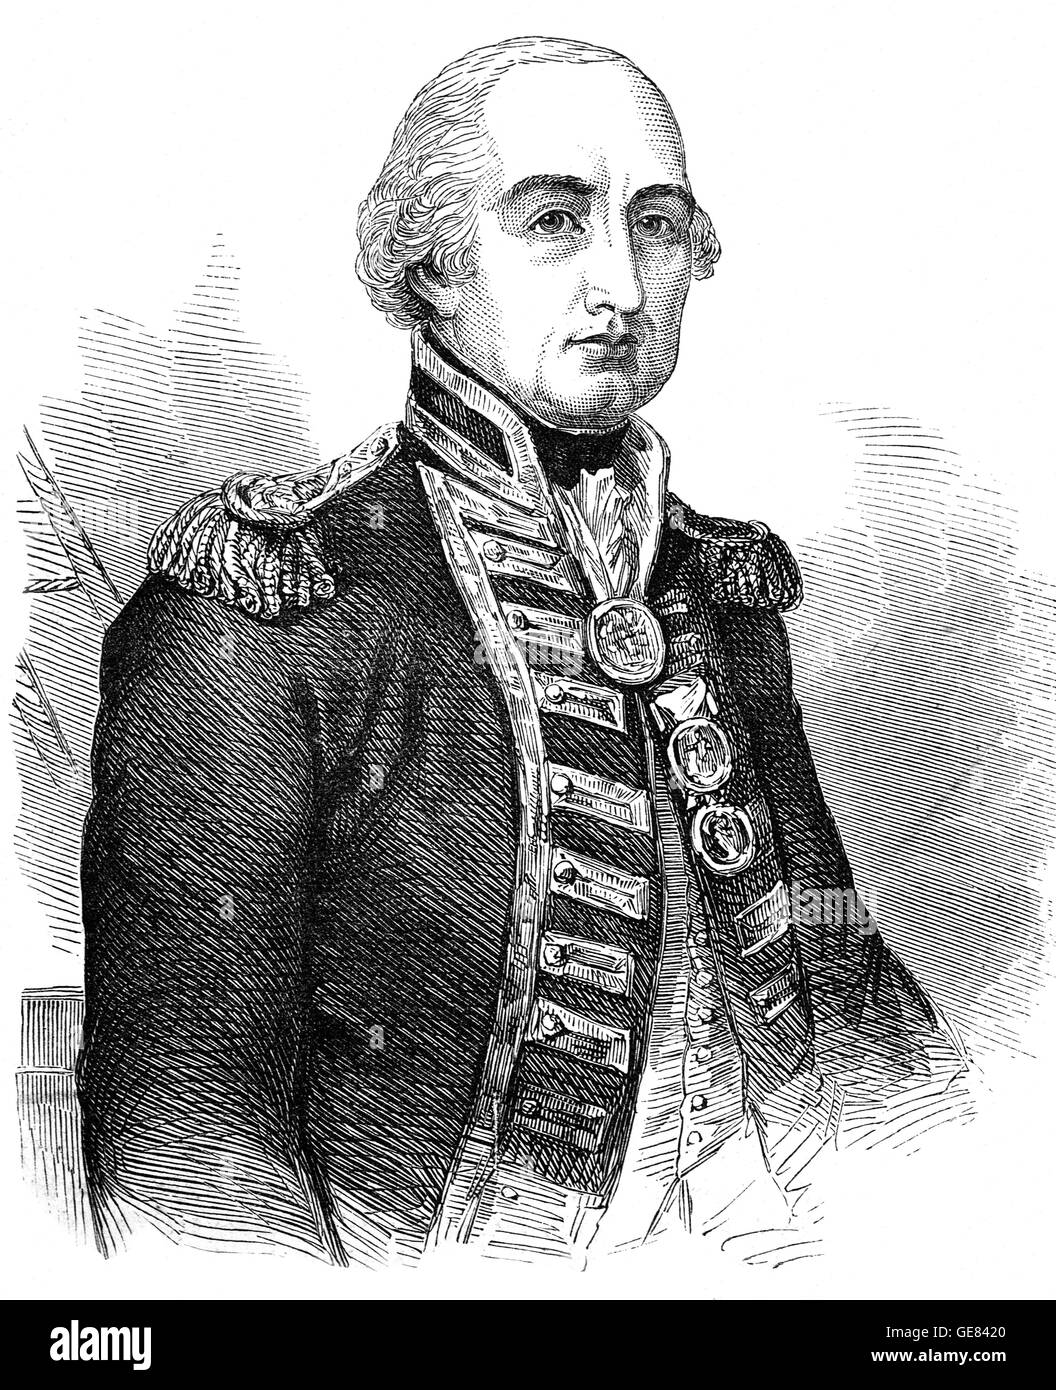 El Vicealmirante Cuthbert Collingwood, 1er Barón Collingwood (1748 - 1810) fue un almirante de la Armada Real. Trabajó con Lord Nelson en varios de los británicos las victorias de las guerras napoleónicas, y frecuentemente como sucesor de Nelson en comandos. Fue nombrado Comandante en Jefe de la flota del Mediterráneo poco antes de su muerte. Foto de stock